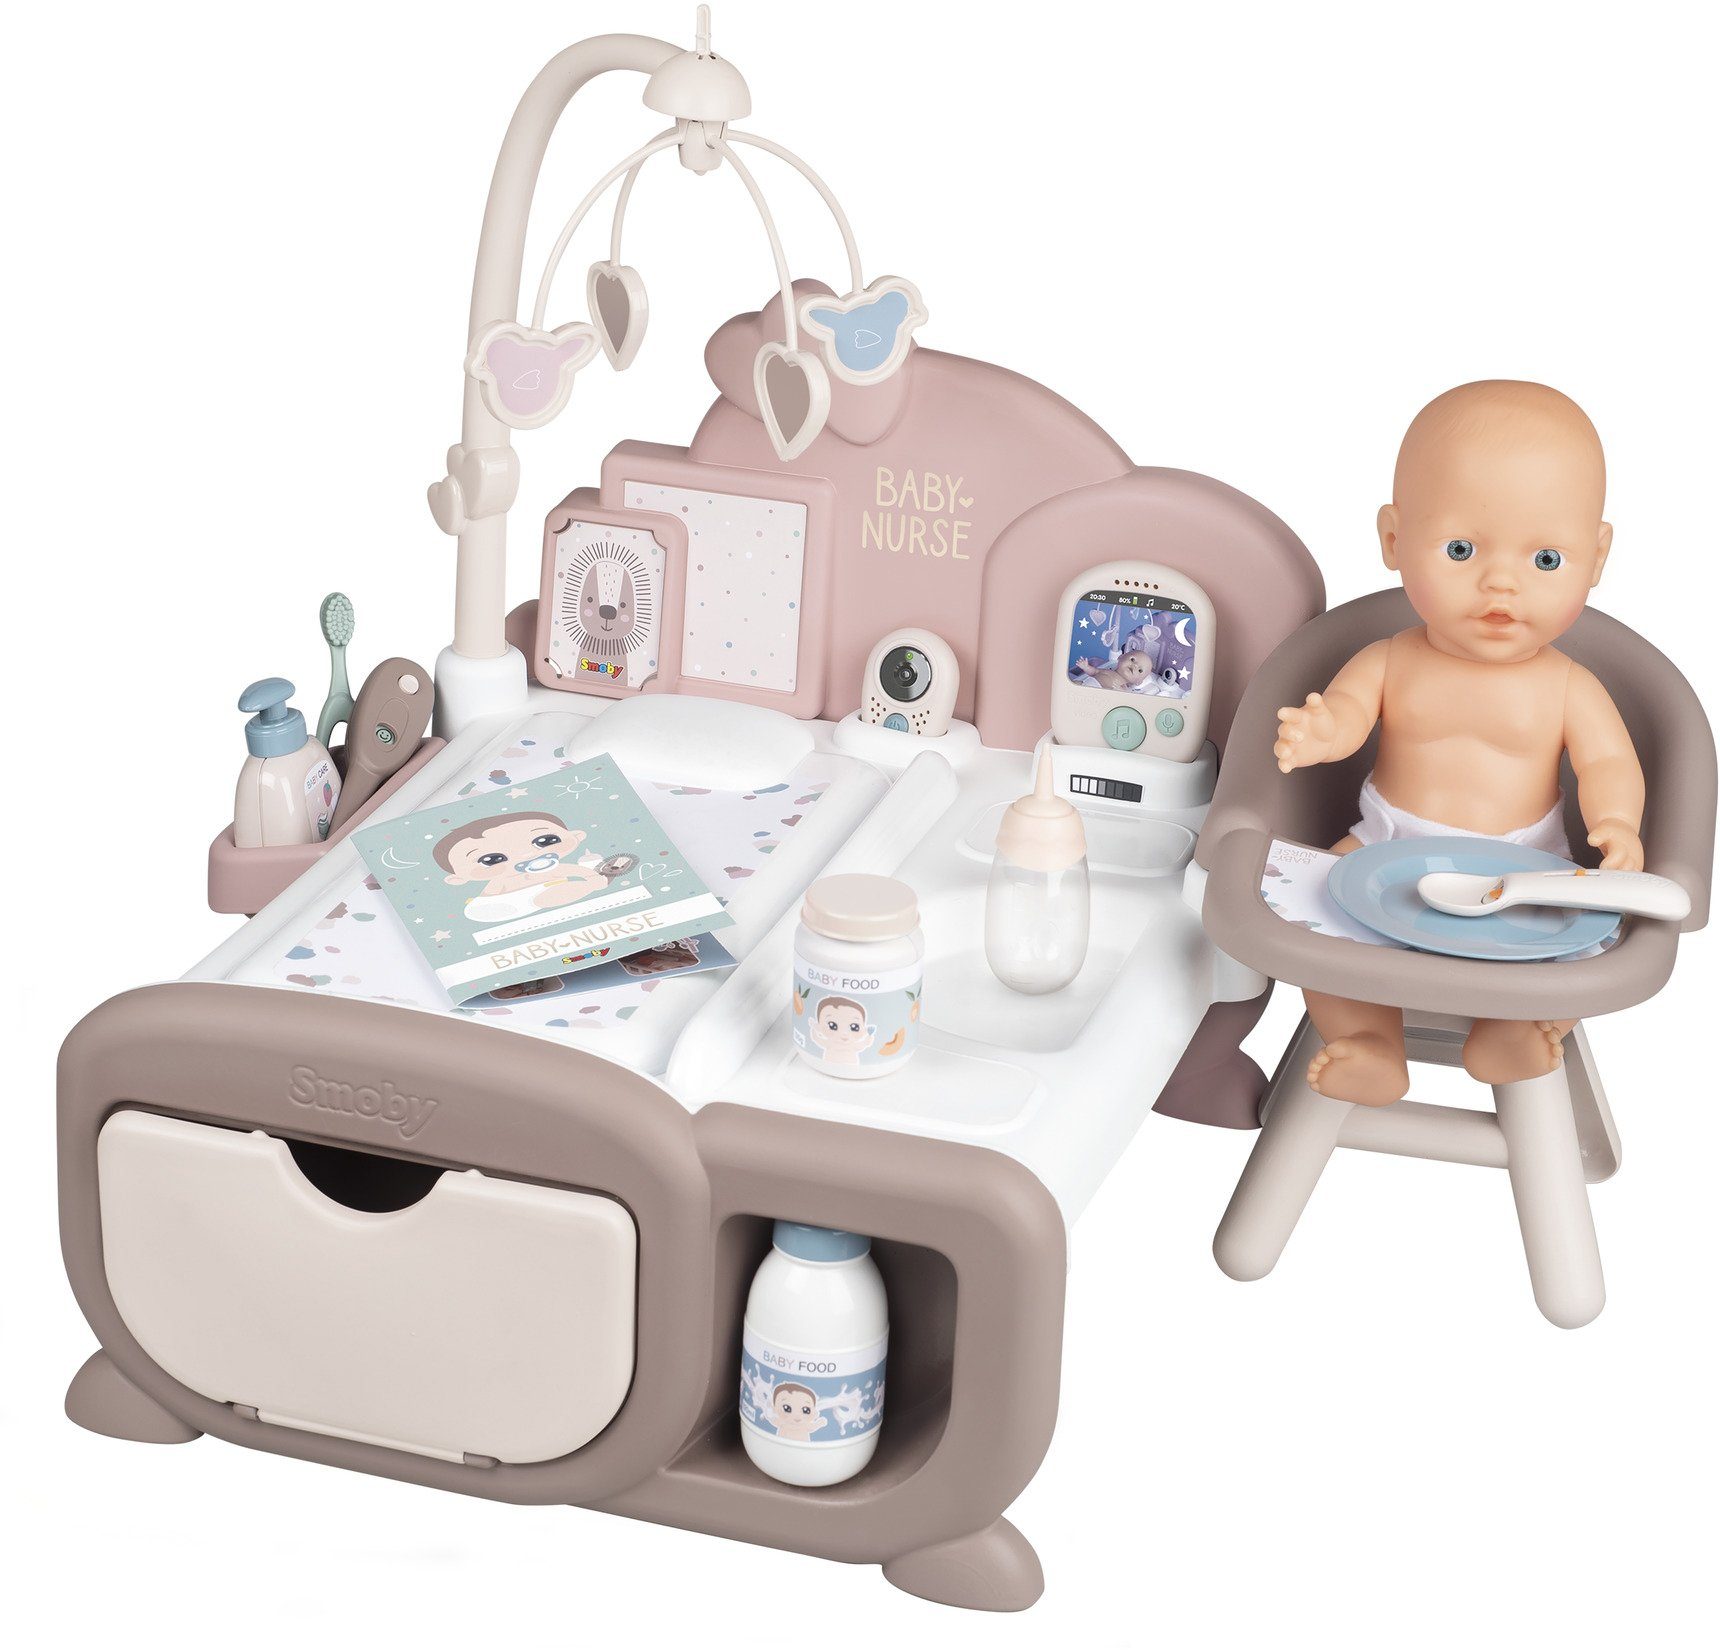 Smoby Puppen Spielcenter Spielzeug Puppen Baby Nurse Puppen Bett und  Waschtisch 7600220375